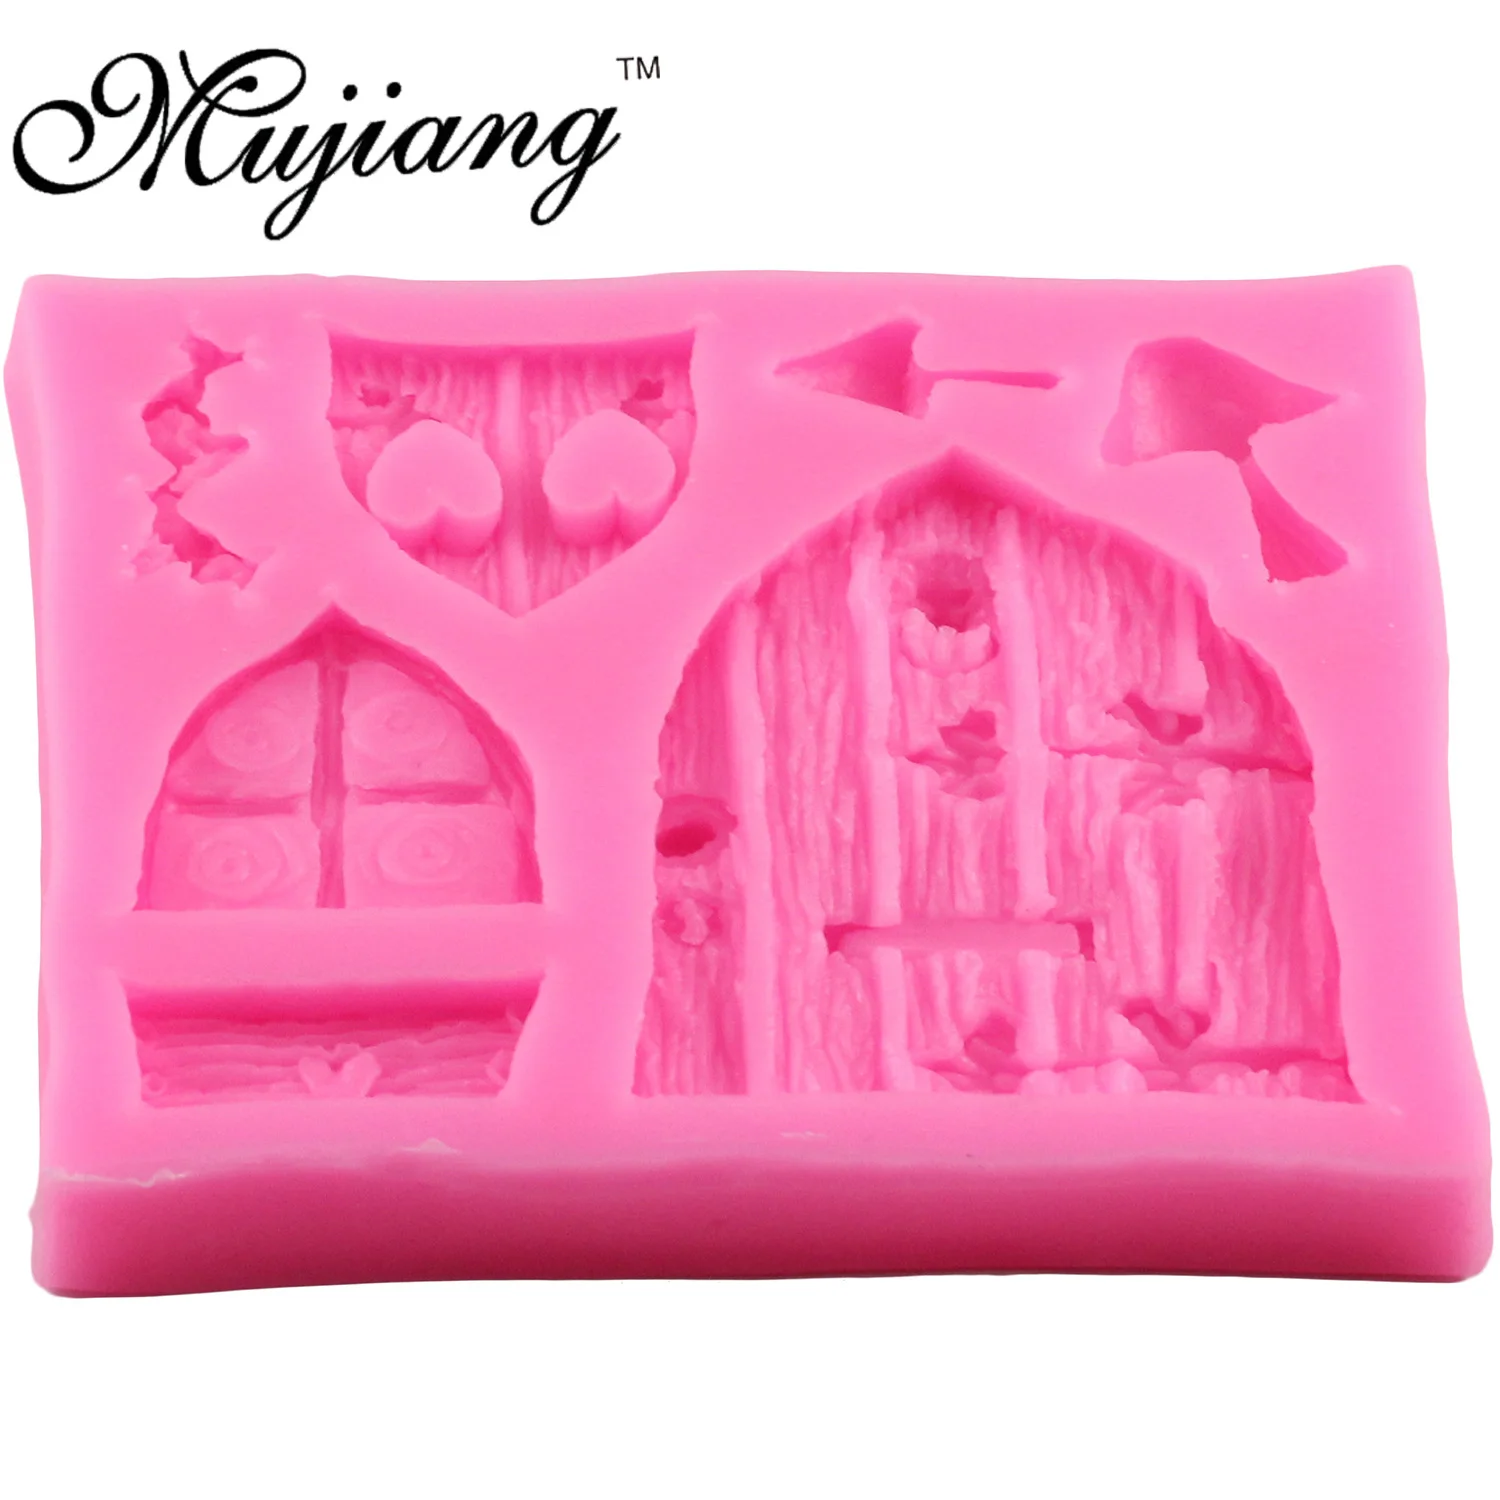 Mujiang мультфильм сказочный дом дизайн силиконовые формы помадка торт украшения формы окна гриб шоколадные конфеты Fimo глиняные формы